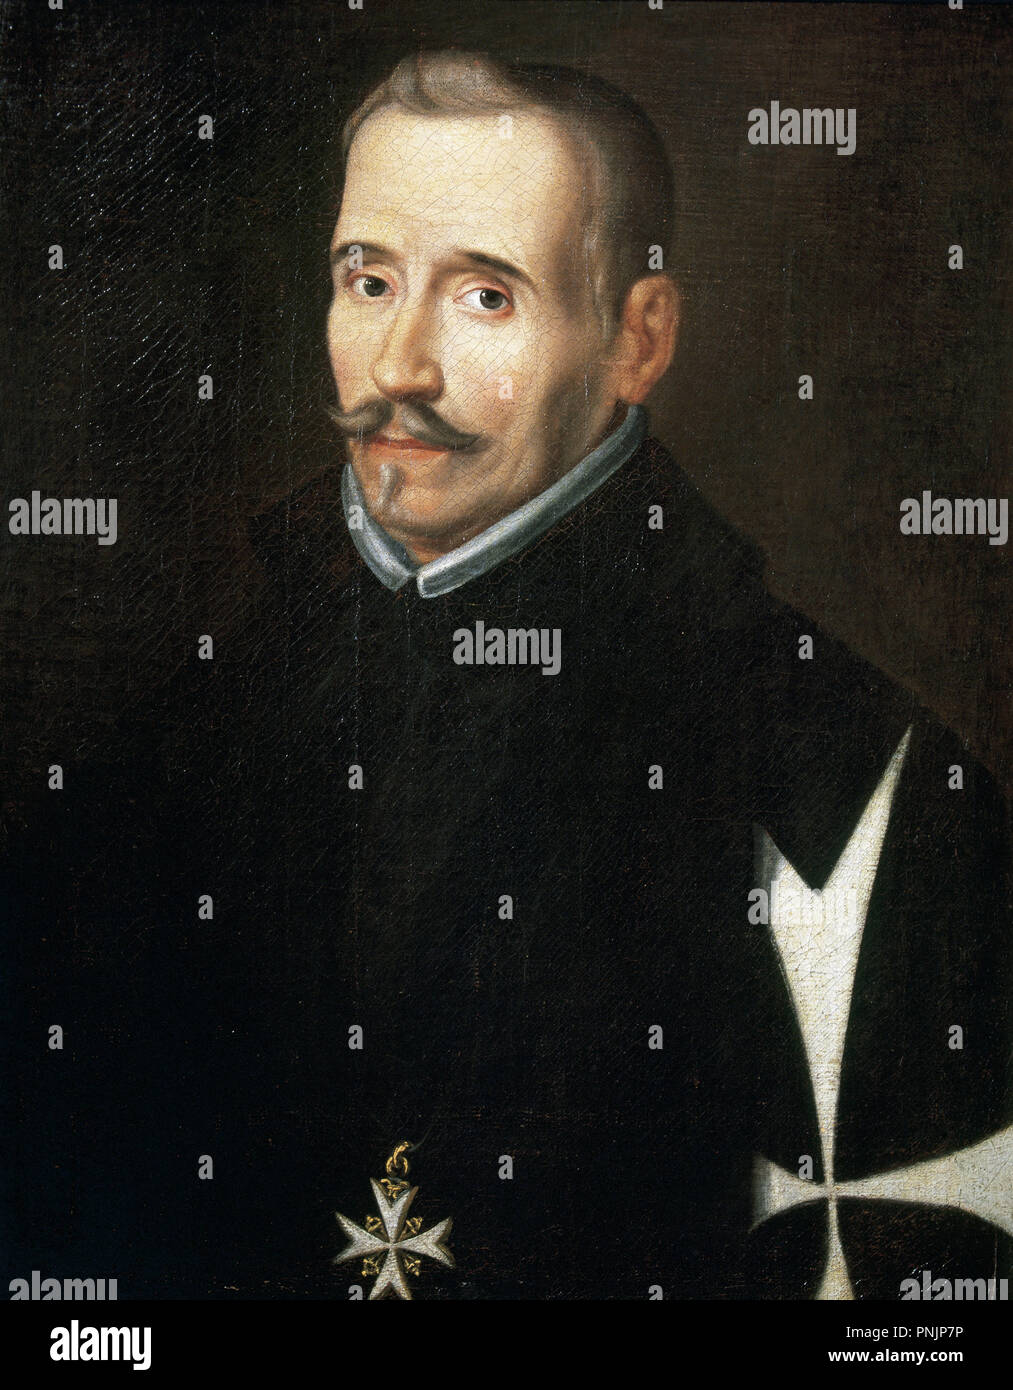 VEGA Y CARPIO, Félix Lope de (1562-1635). Escritor español. Oleo de Eugenio Caxes. Museo Lázaro Galdiano. Madrid. España. Stock Photo